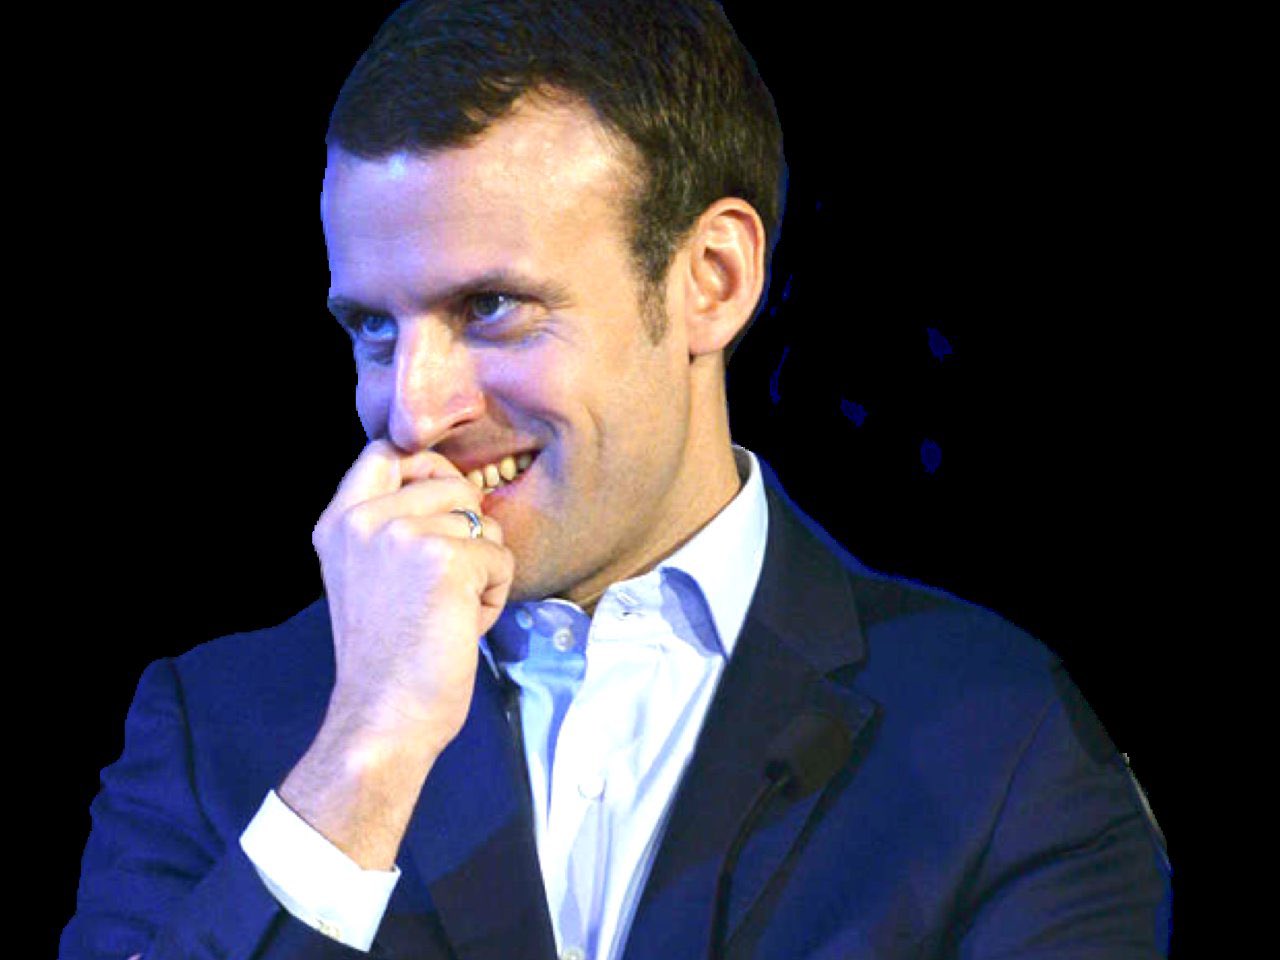 Emmanuel Macron et la rumeur d’homosexualité : ce mystérieux coup de fil reçu par Brigitte Macron